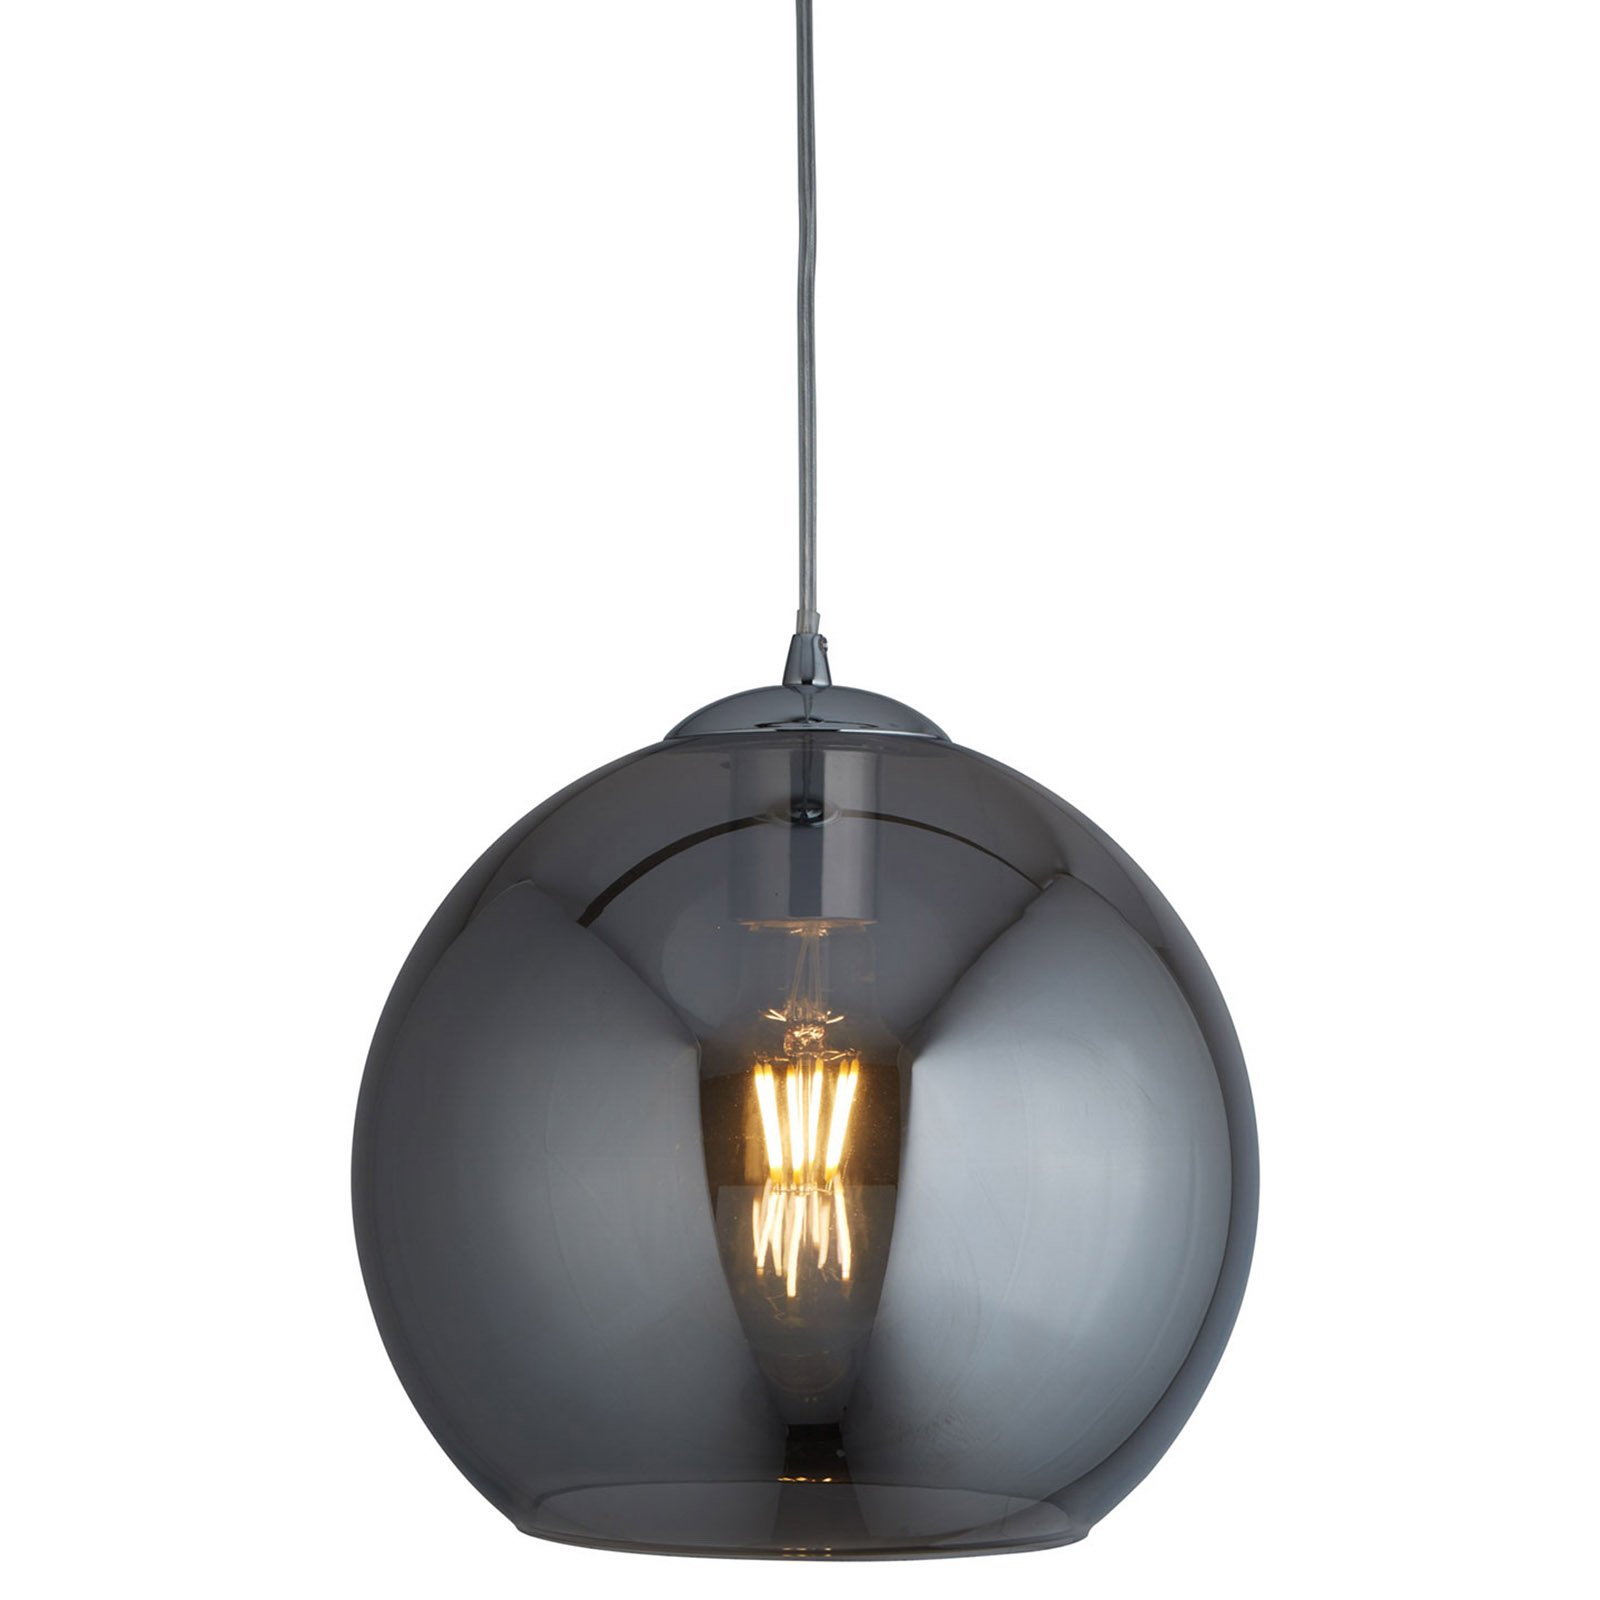 Lampa wisząca Balls, kulki szklane szare, Ø 30cm